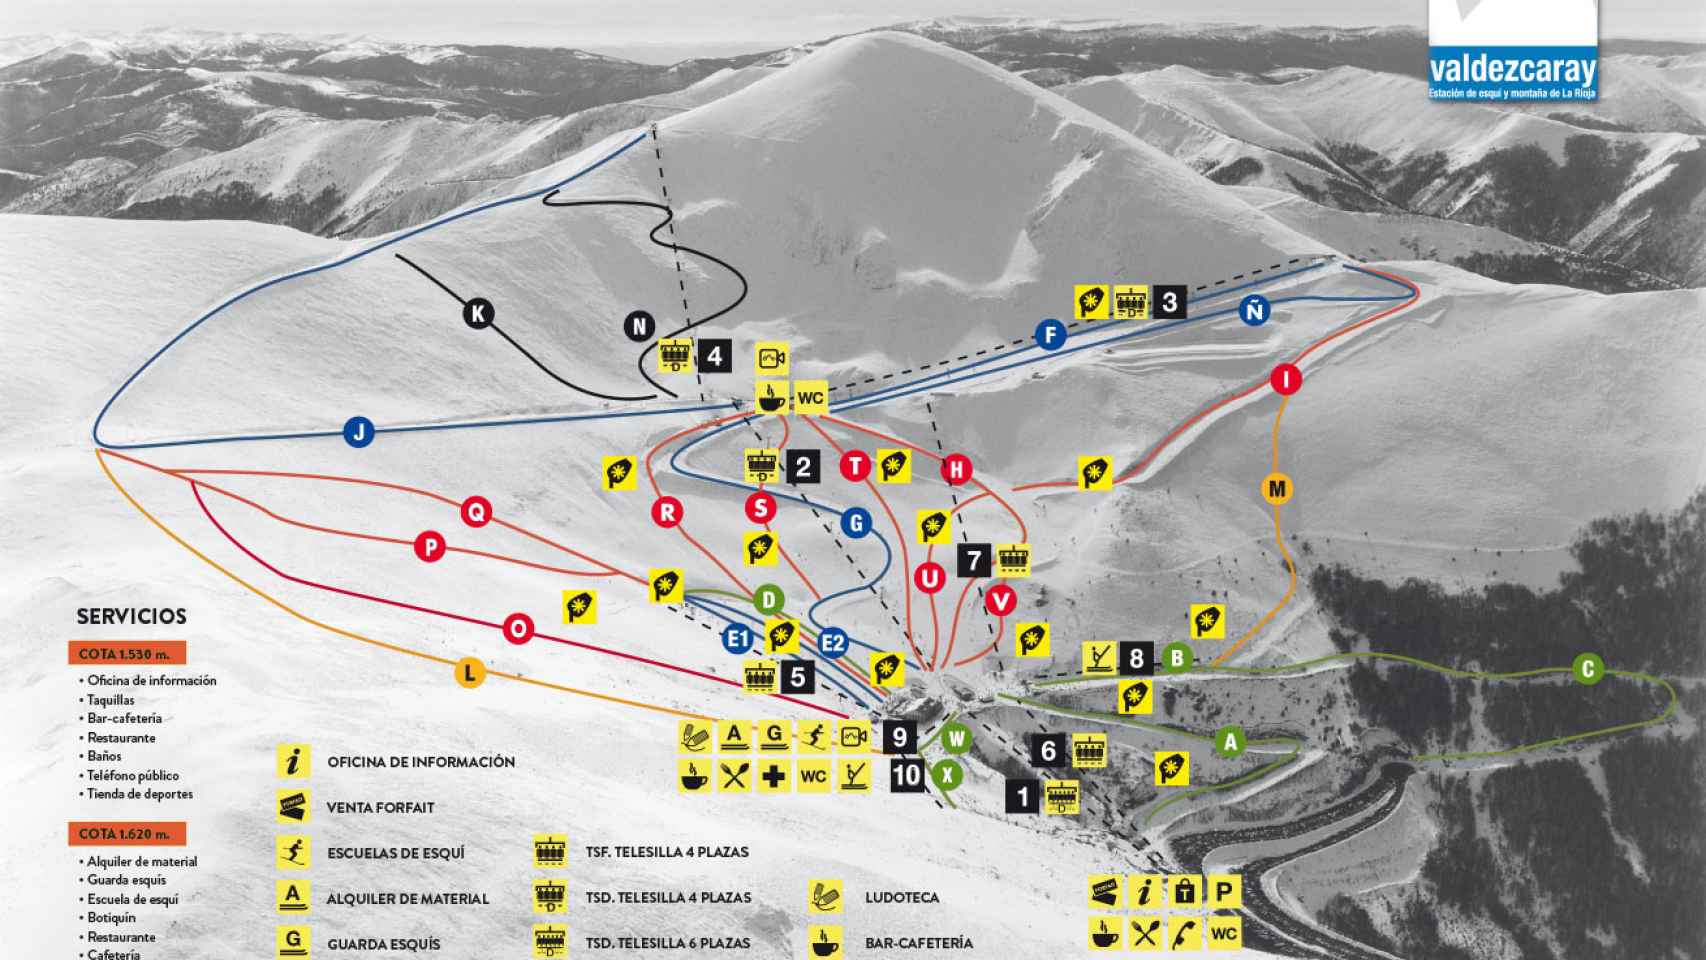 Mapa de pistas de la estación de Valdezcaray.